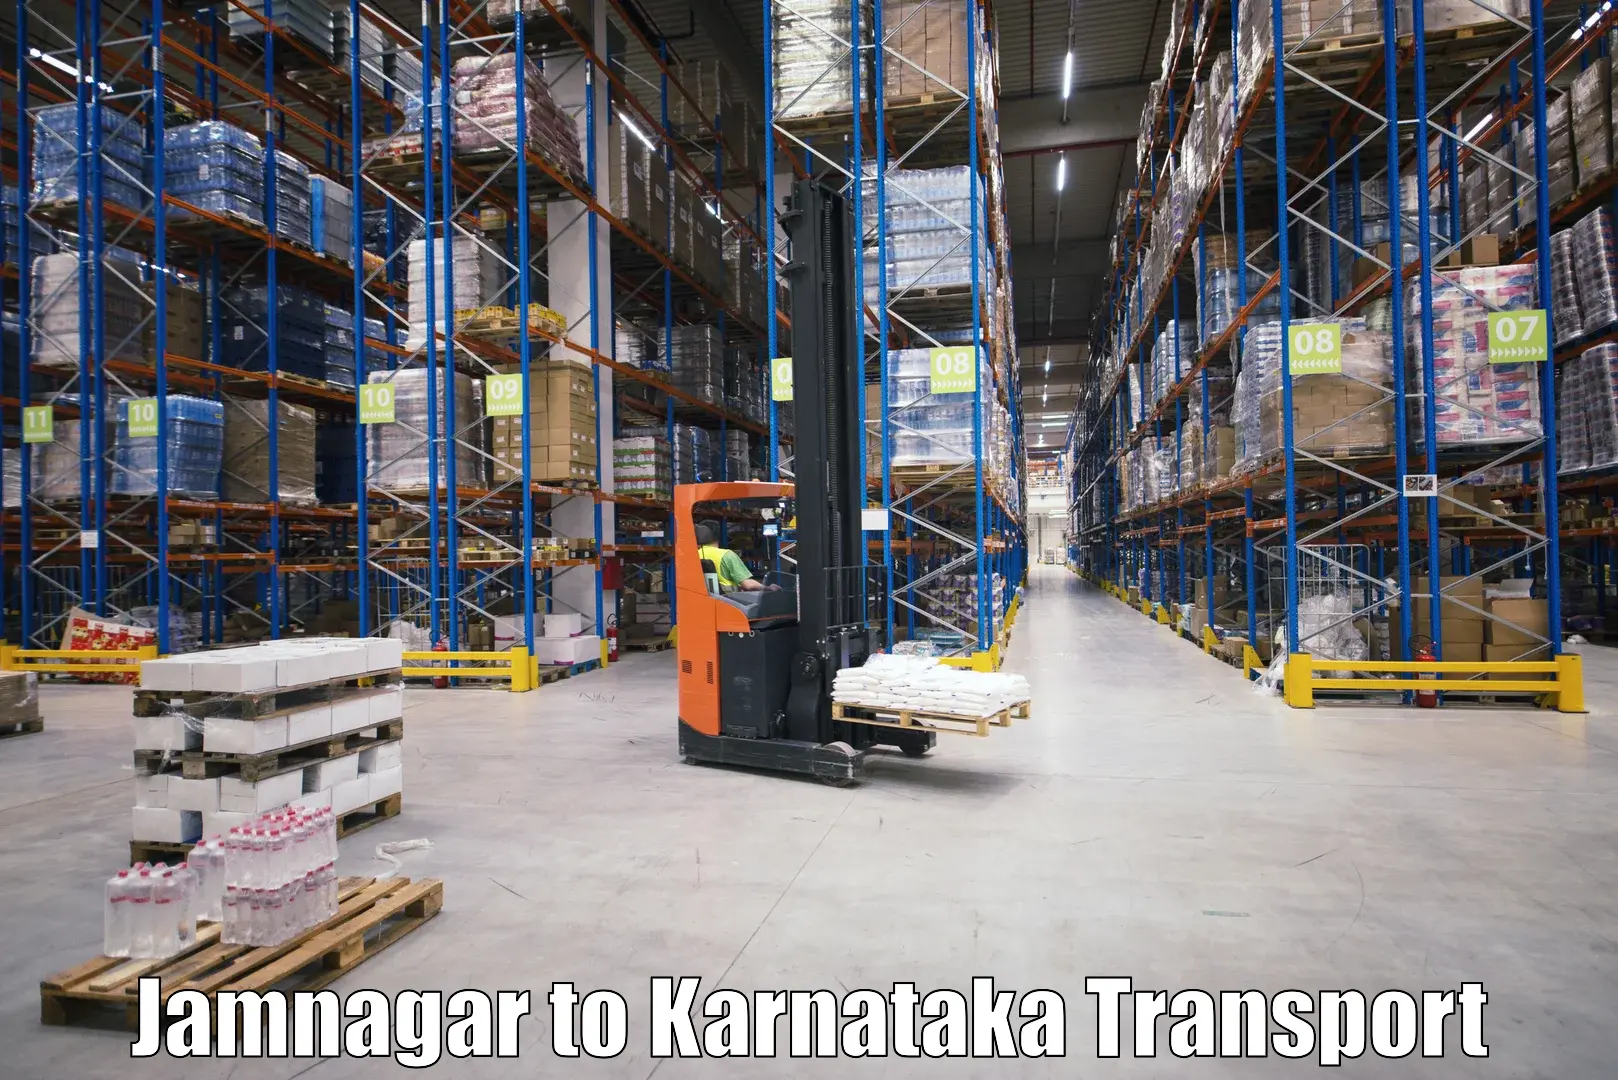 Air freight transport services Jamnagar to Ballari